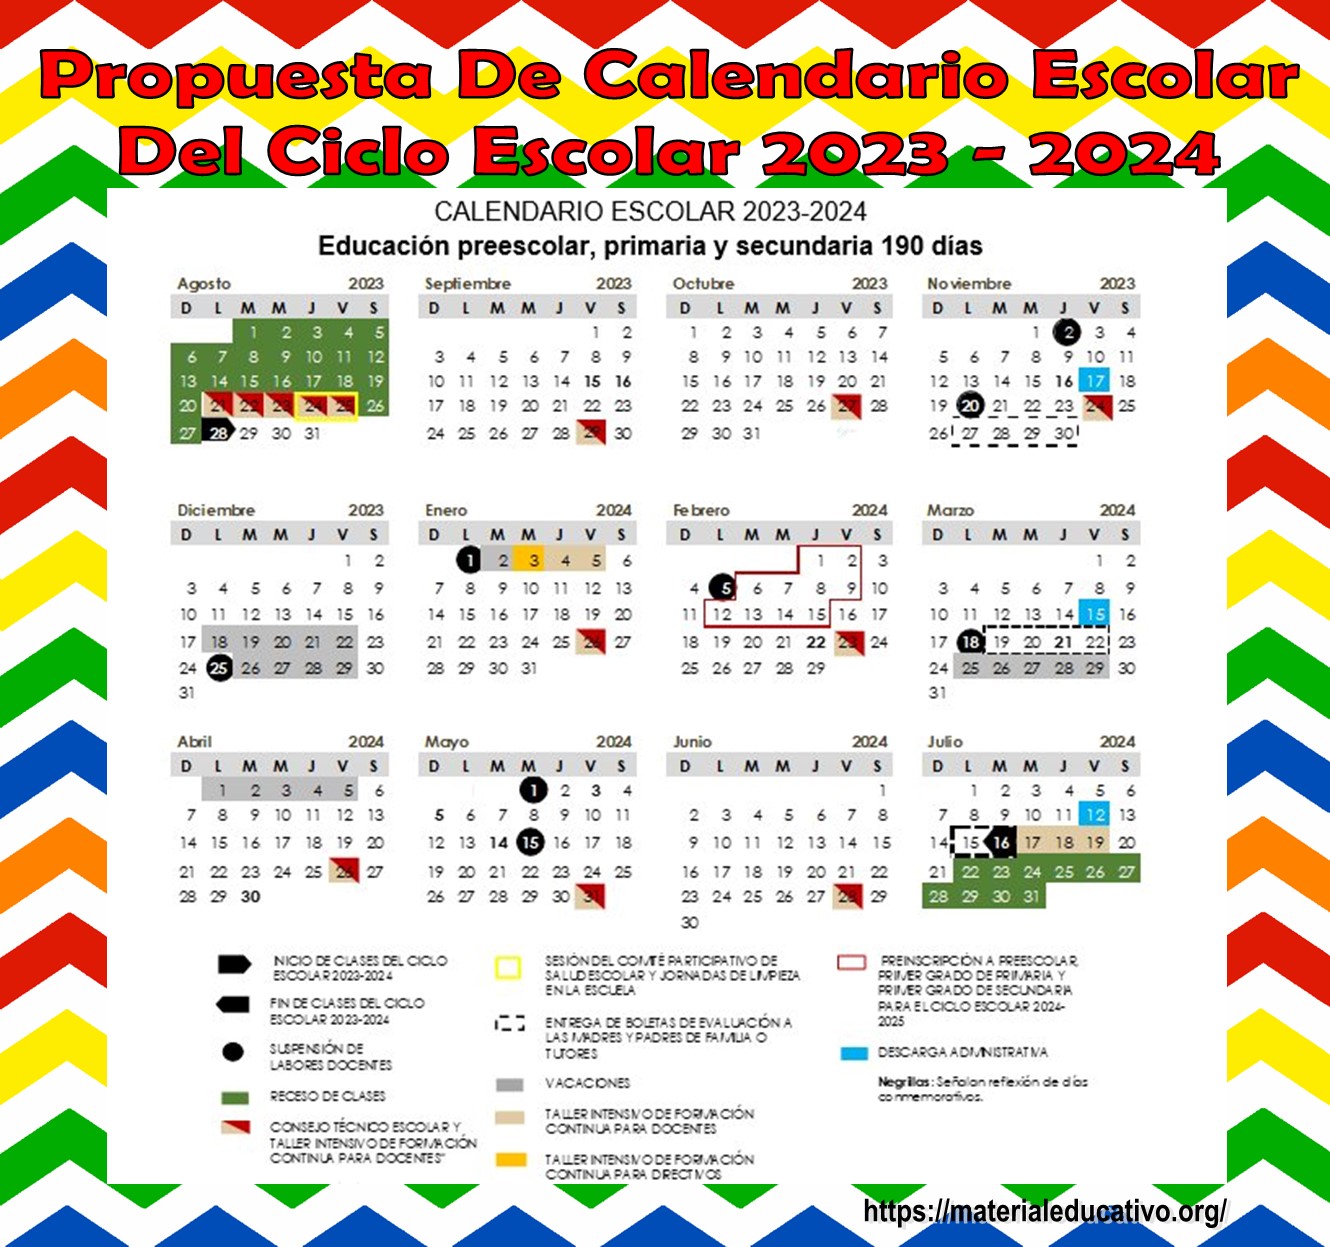 Propuesta del calendario escolar para el ciclo escolar 2023 – 2024